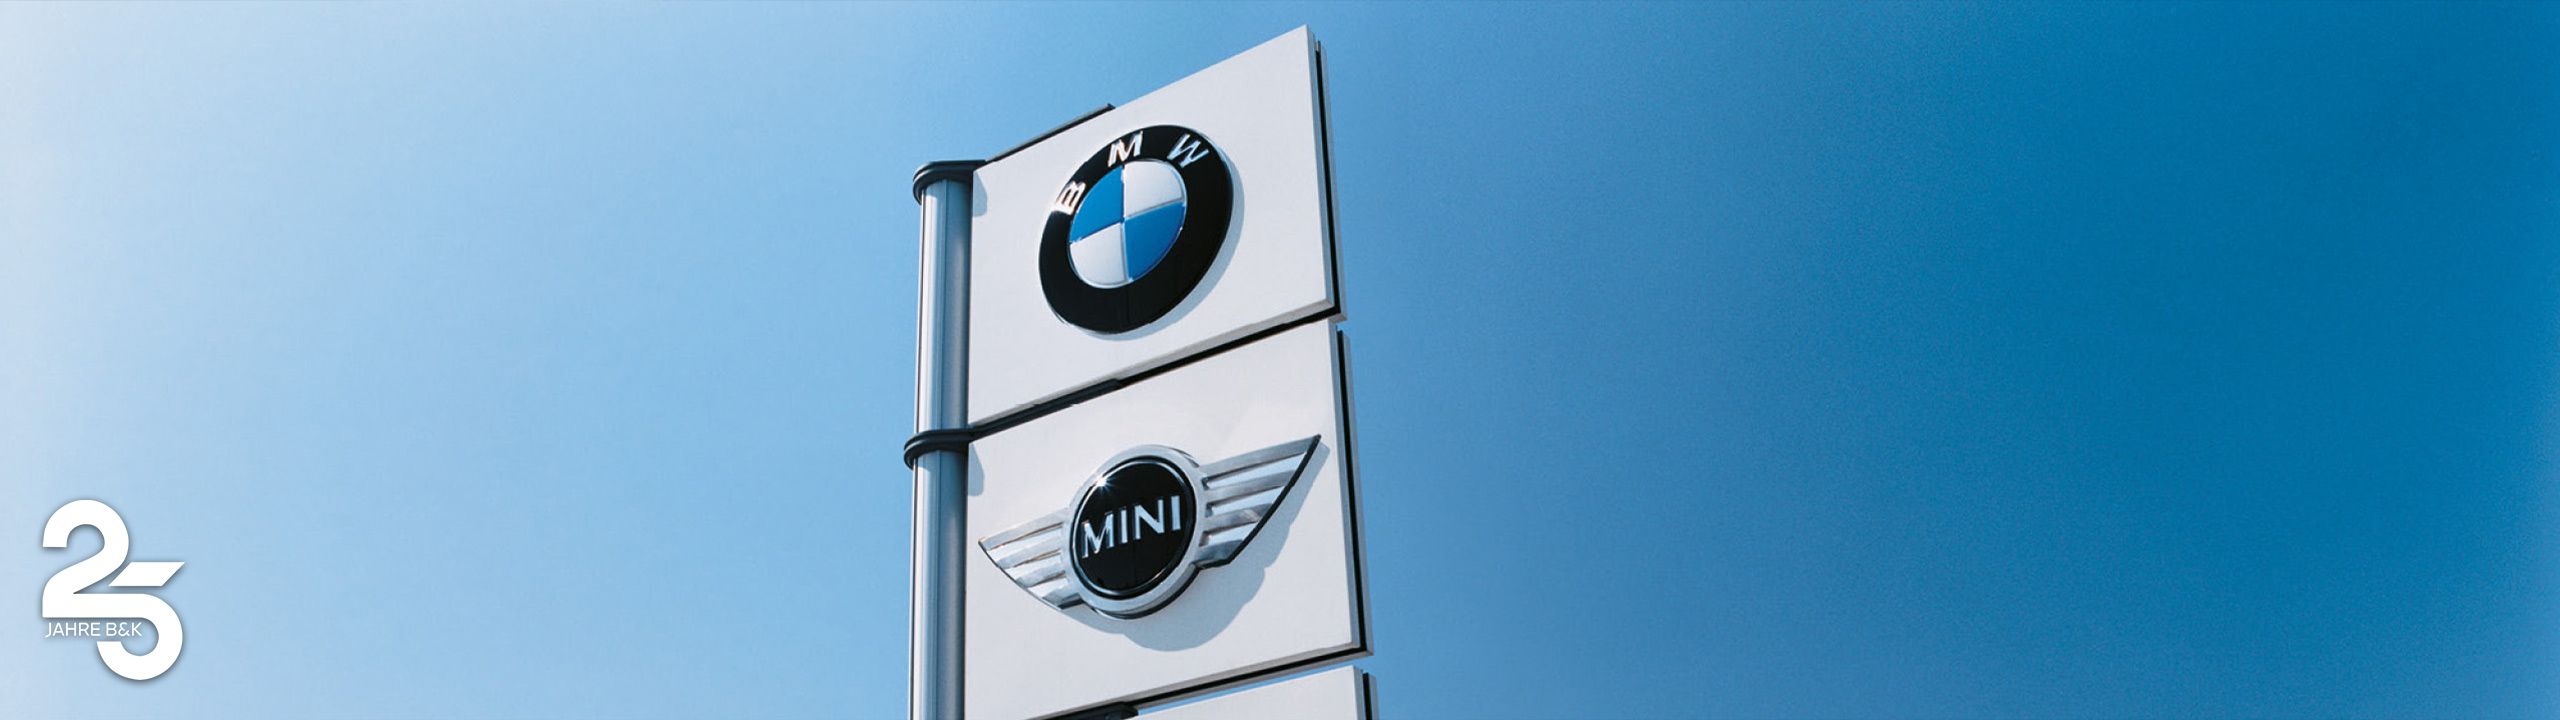 Autohaus Schild mit Marken BMW und Mini